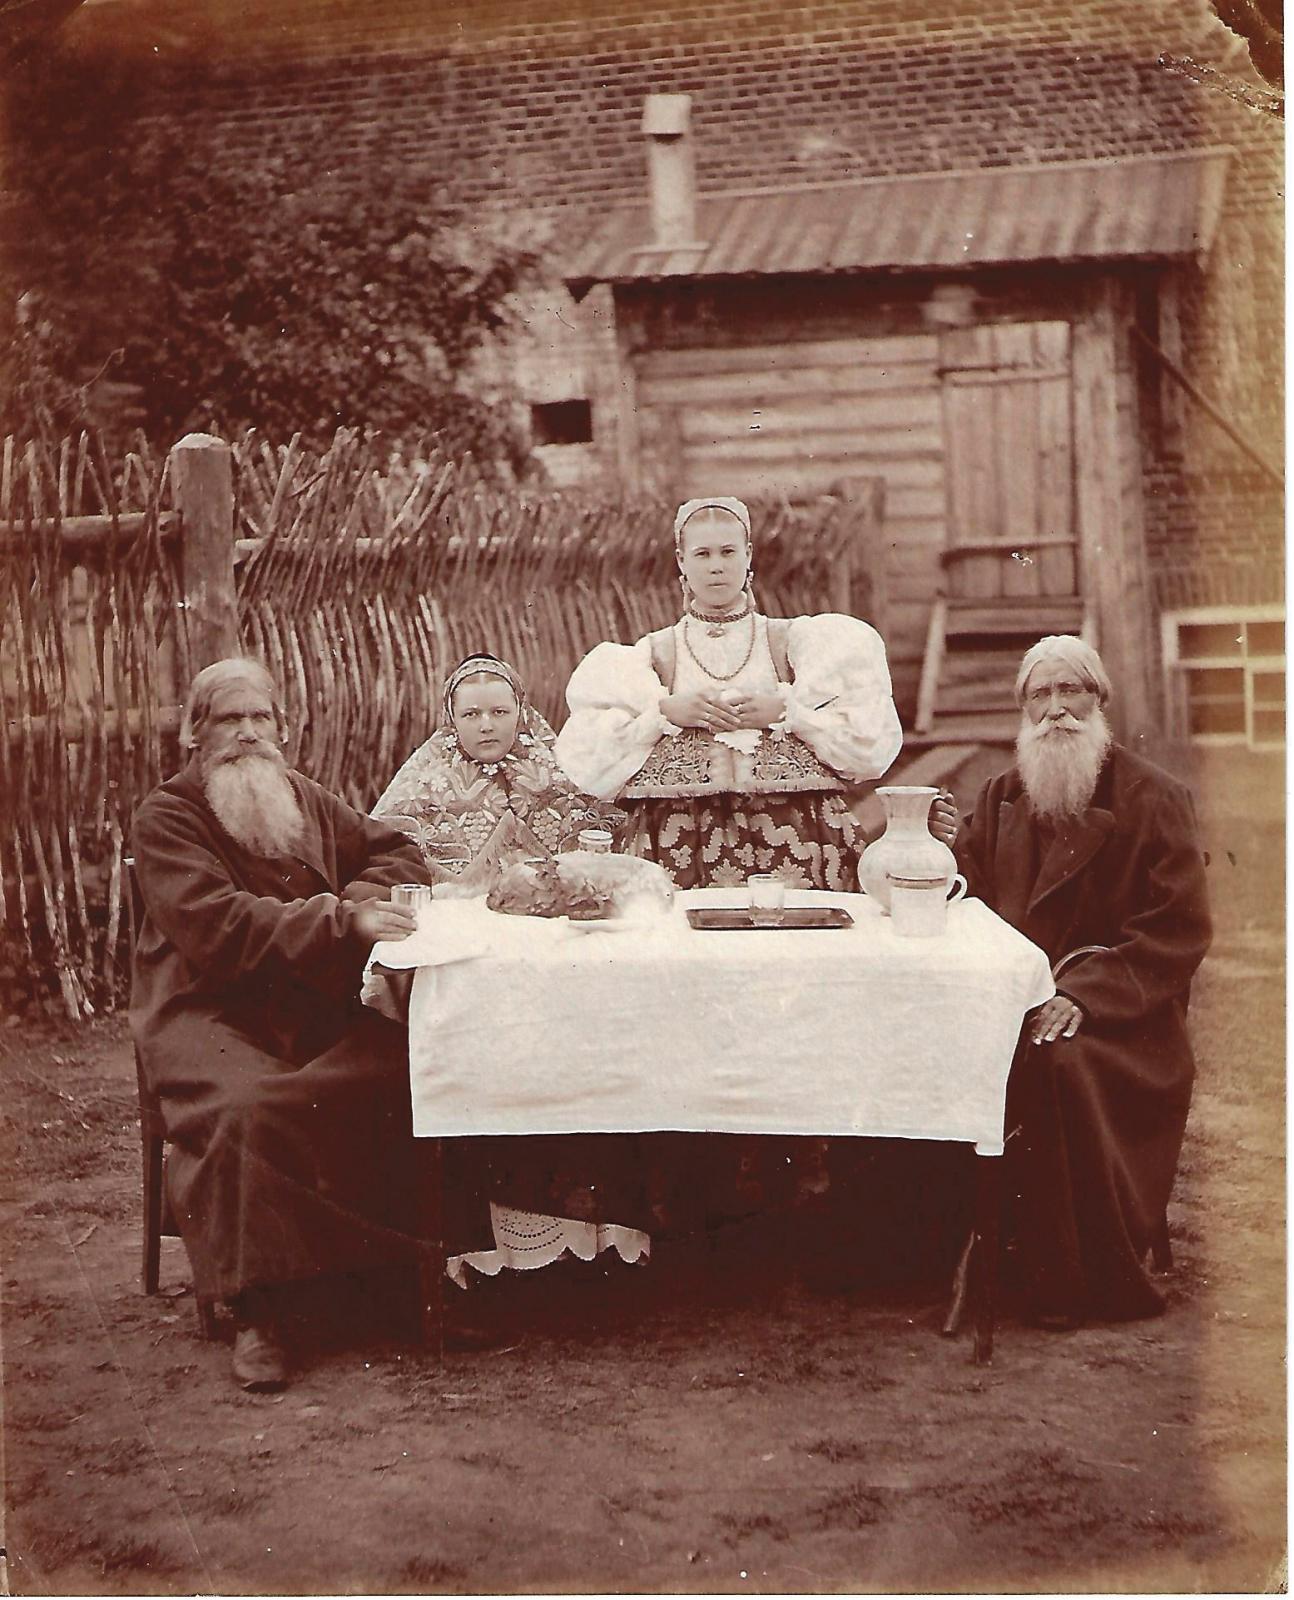 Un aperçu de la Russie des années 1870-1880 